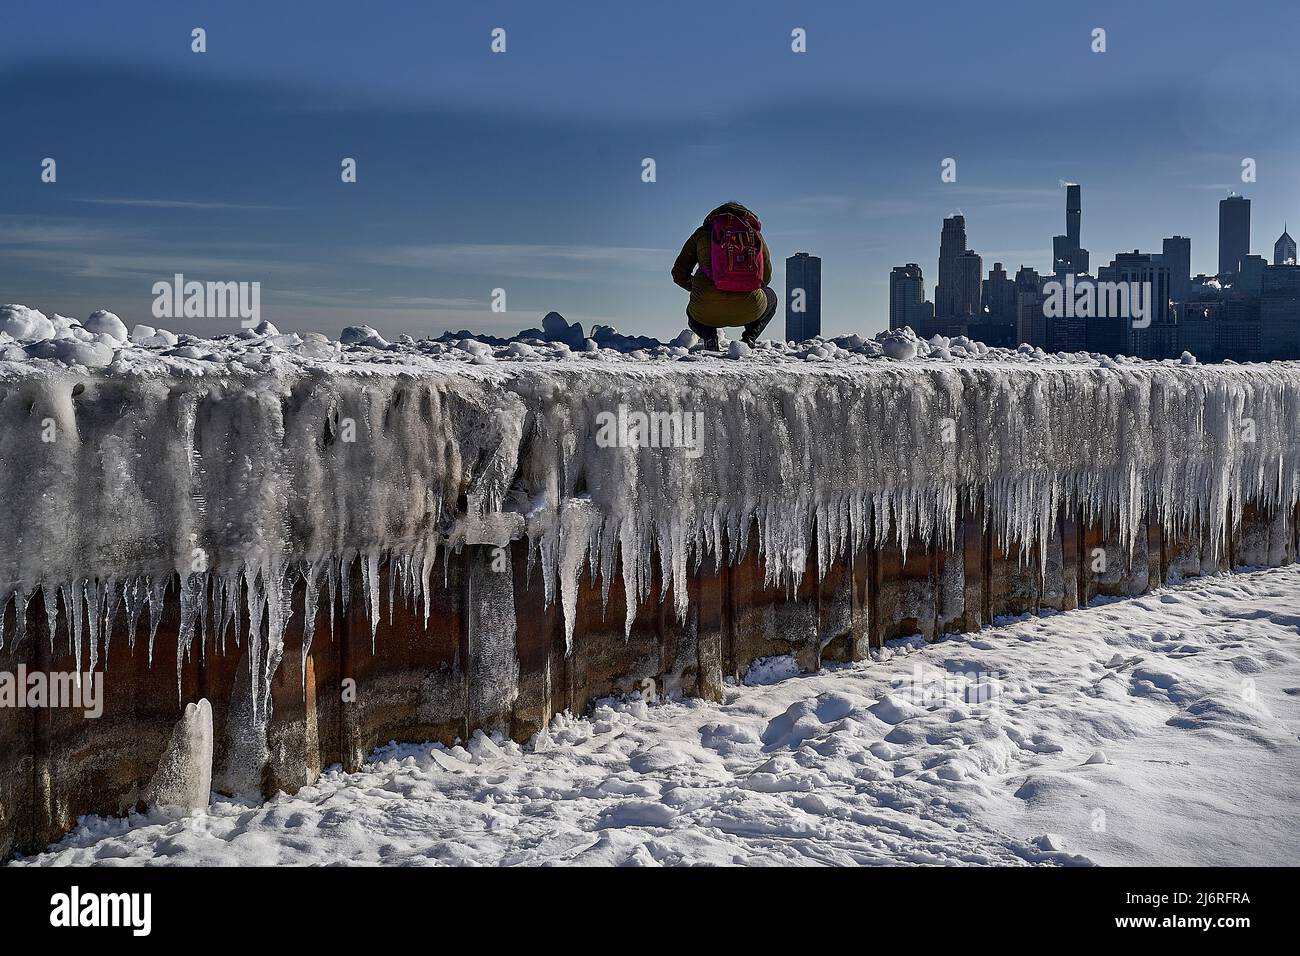 vue en contre-angle d'un photographe accessoire, de glace et de neige, et de la ville en arrière-plan Banque D'Images